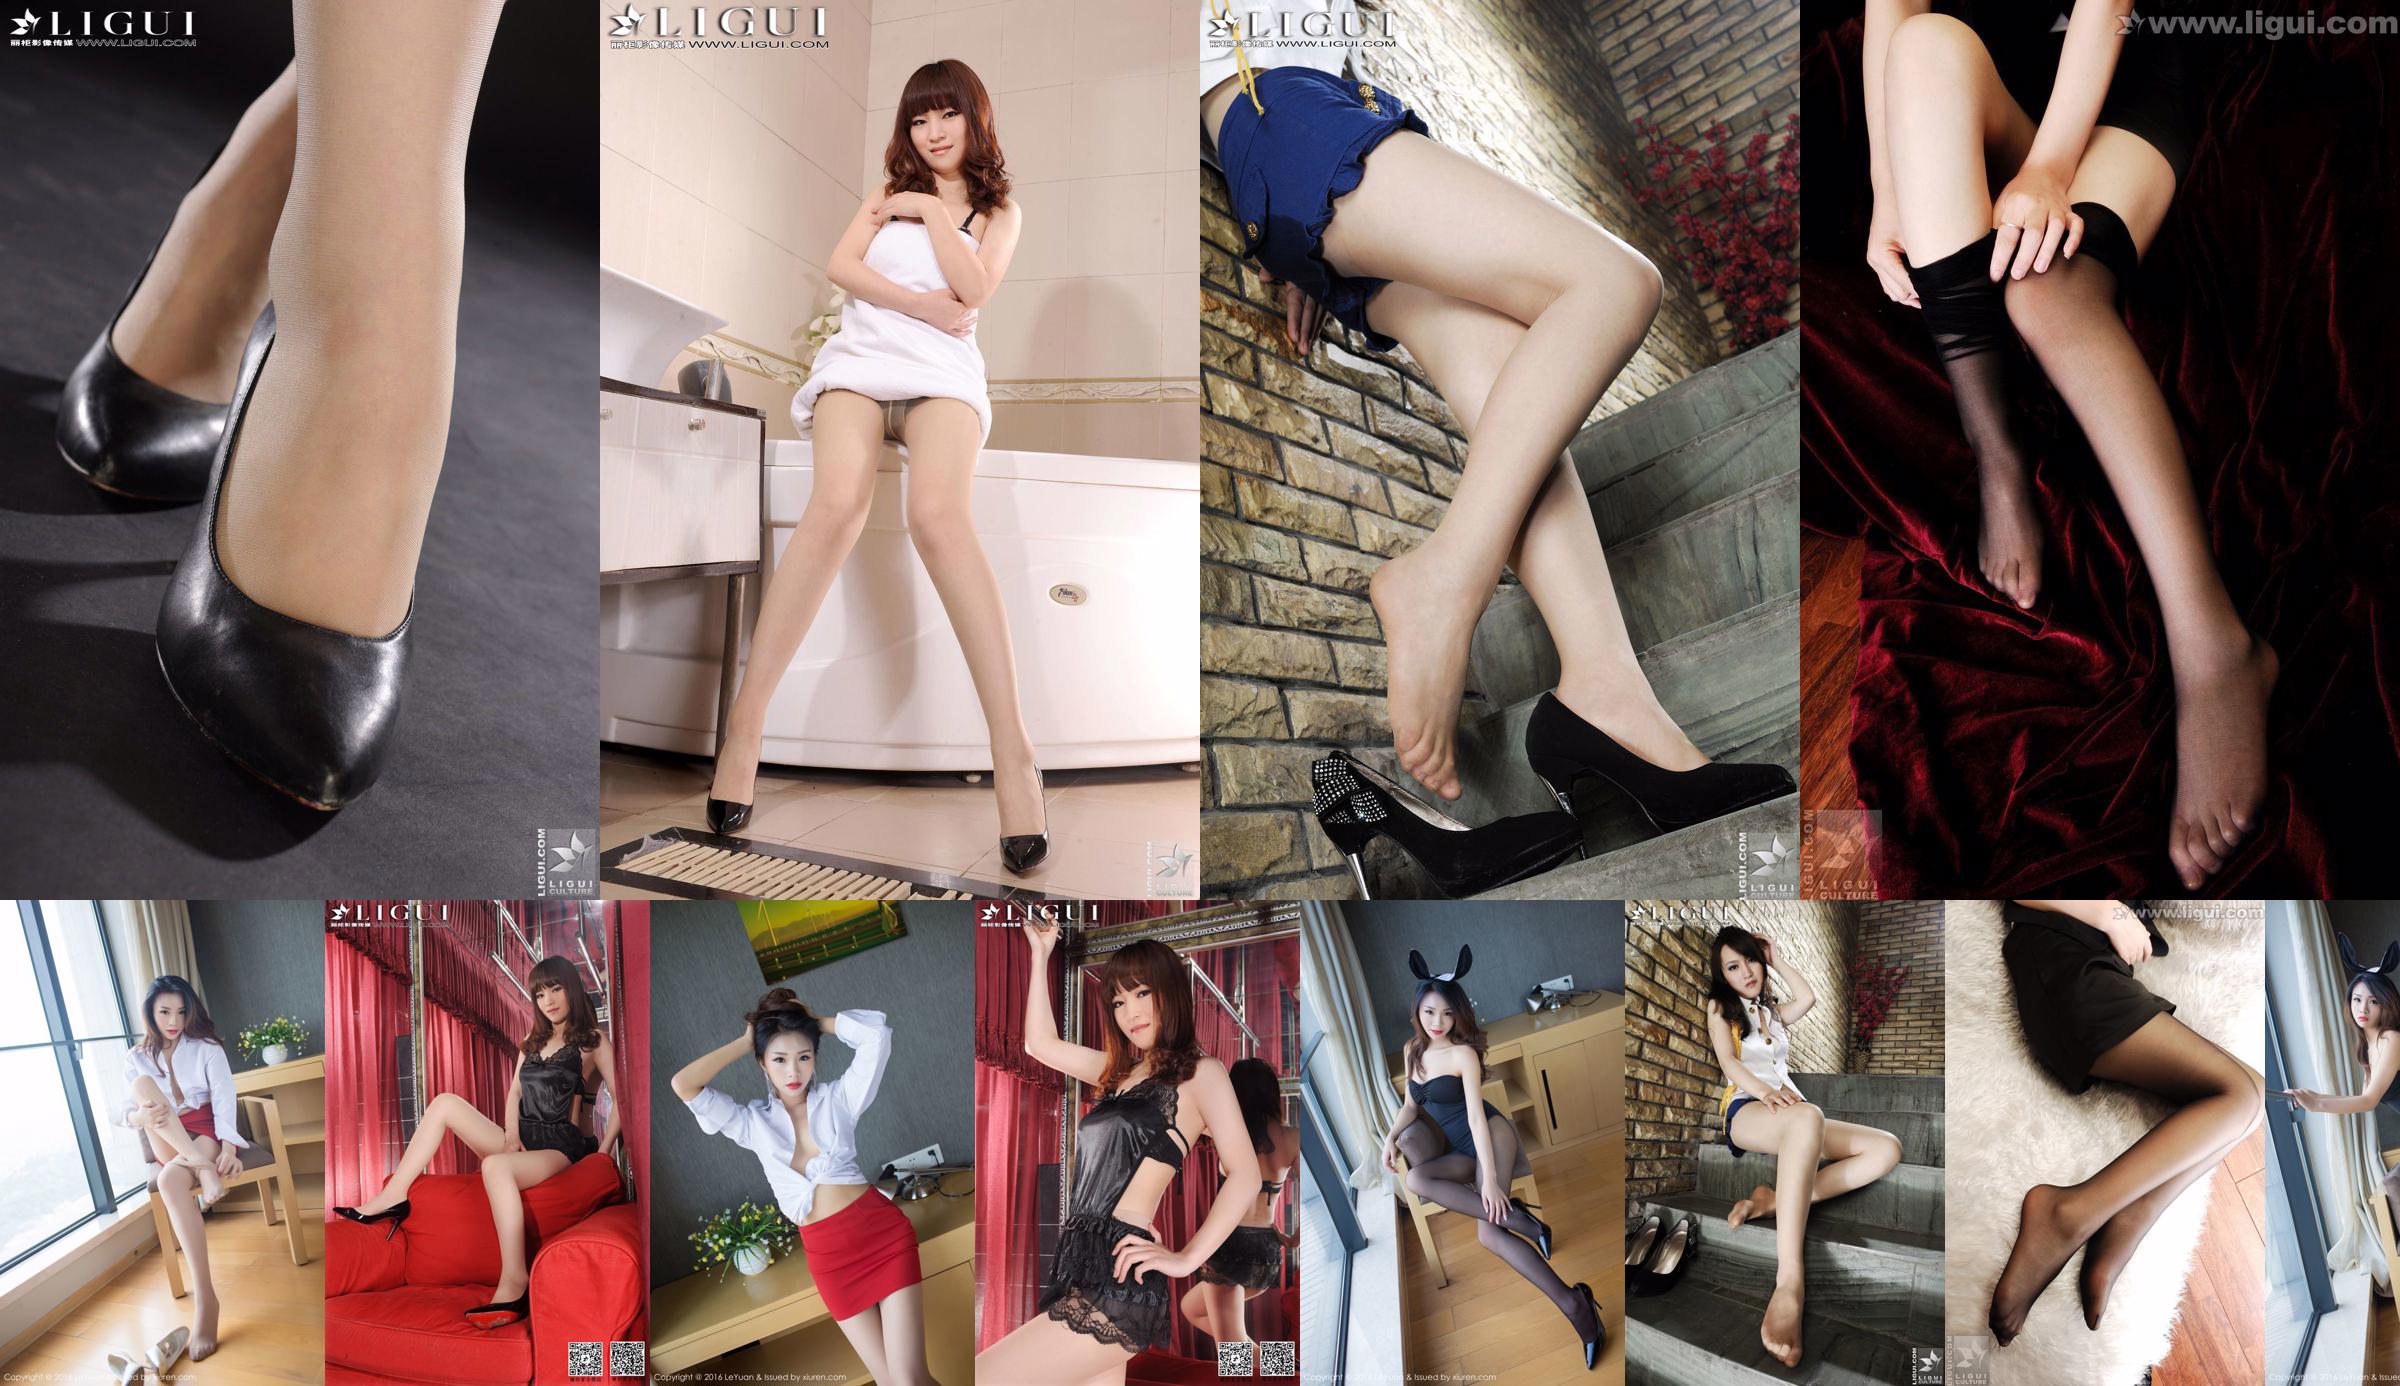 Model Tina "Lace Dudou + Meat Stockings Feet" Complete Works [丽 柜 贵 足 LiGui] Piękne nogi i jadeitowe stopy zdjęcia zdjęcia No.1a52f2 Strona 20